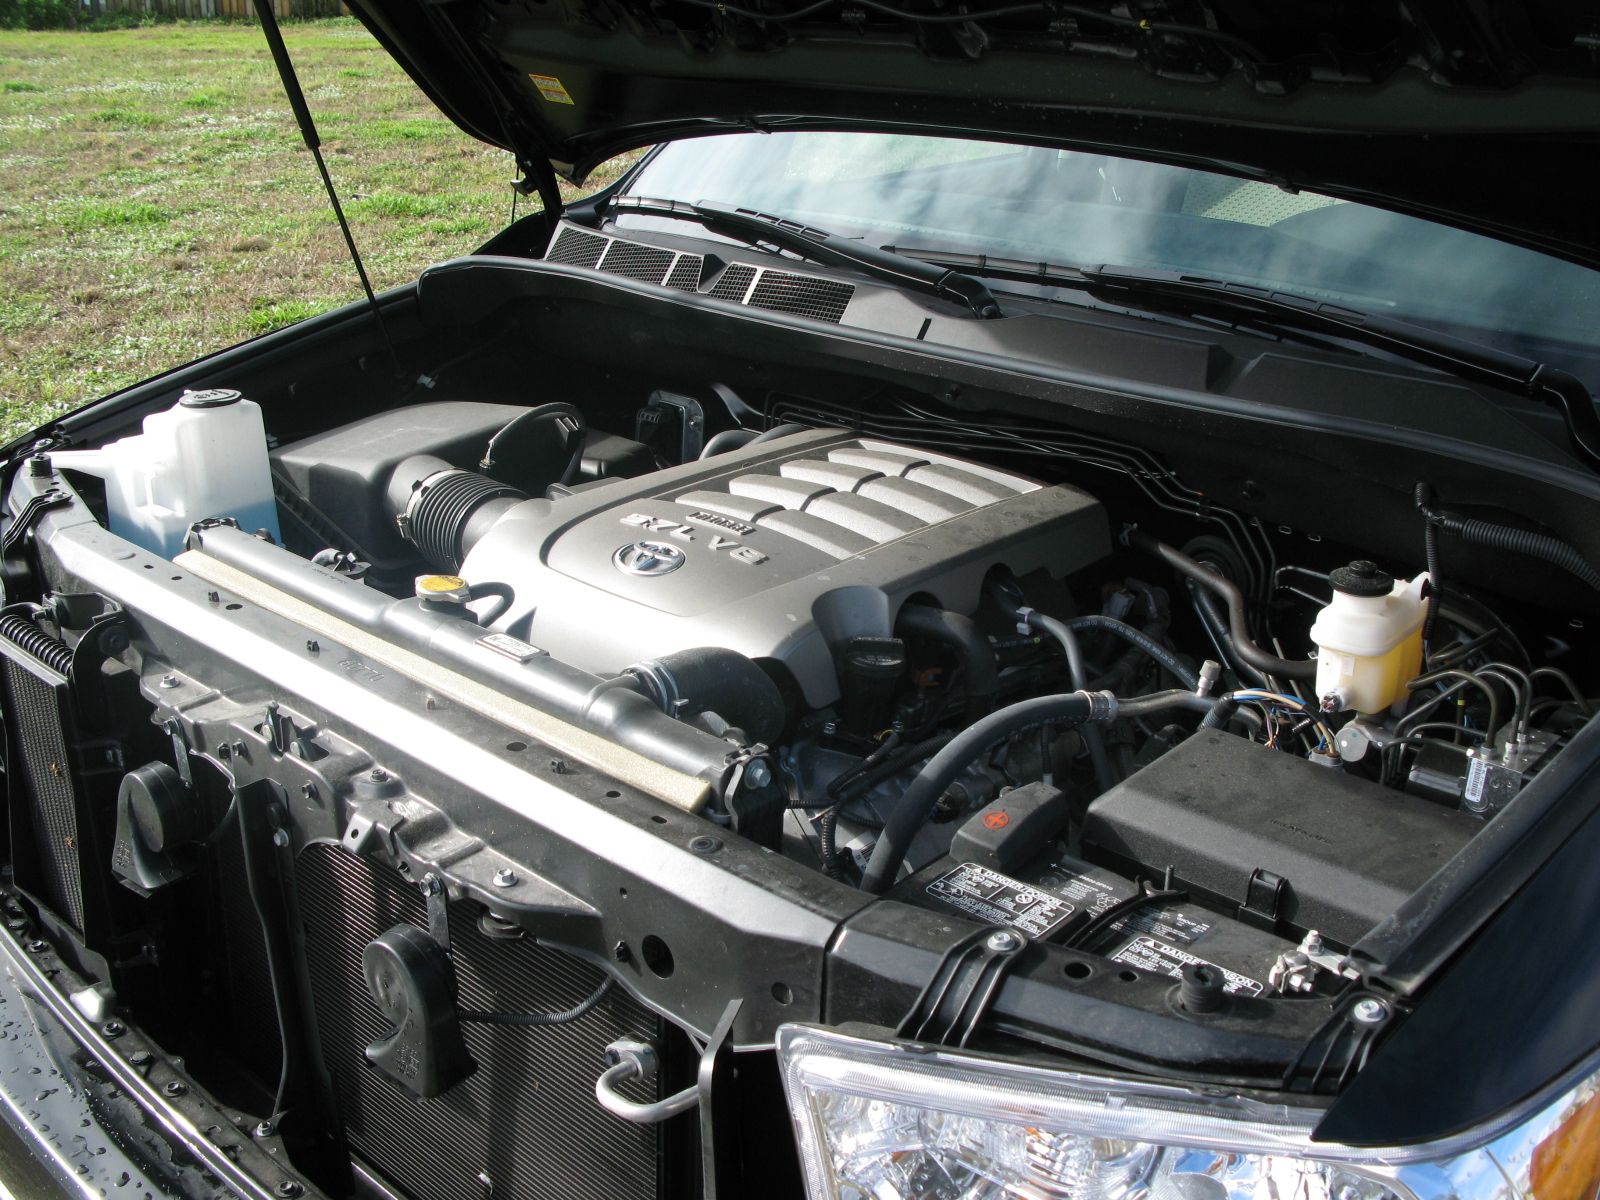 2008 Toyota Tundra 4x4 Crewmax SR5